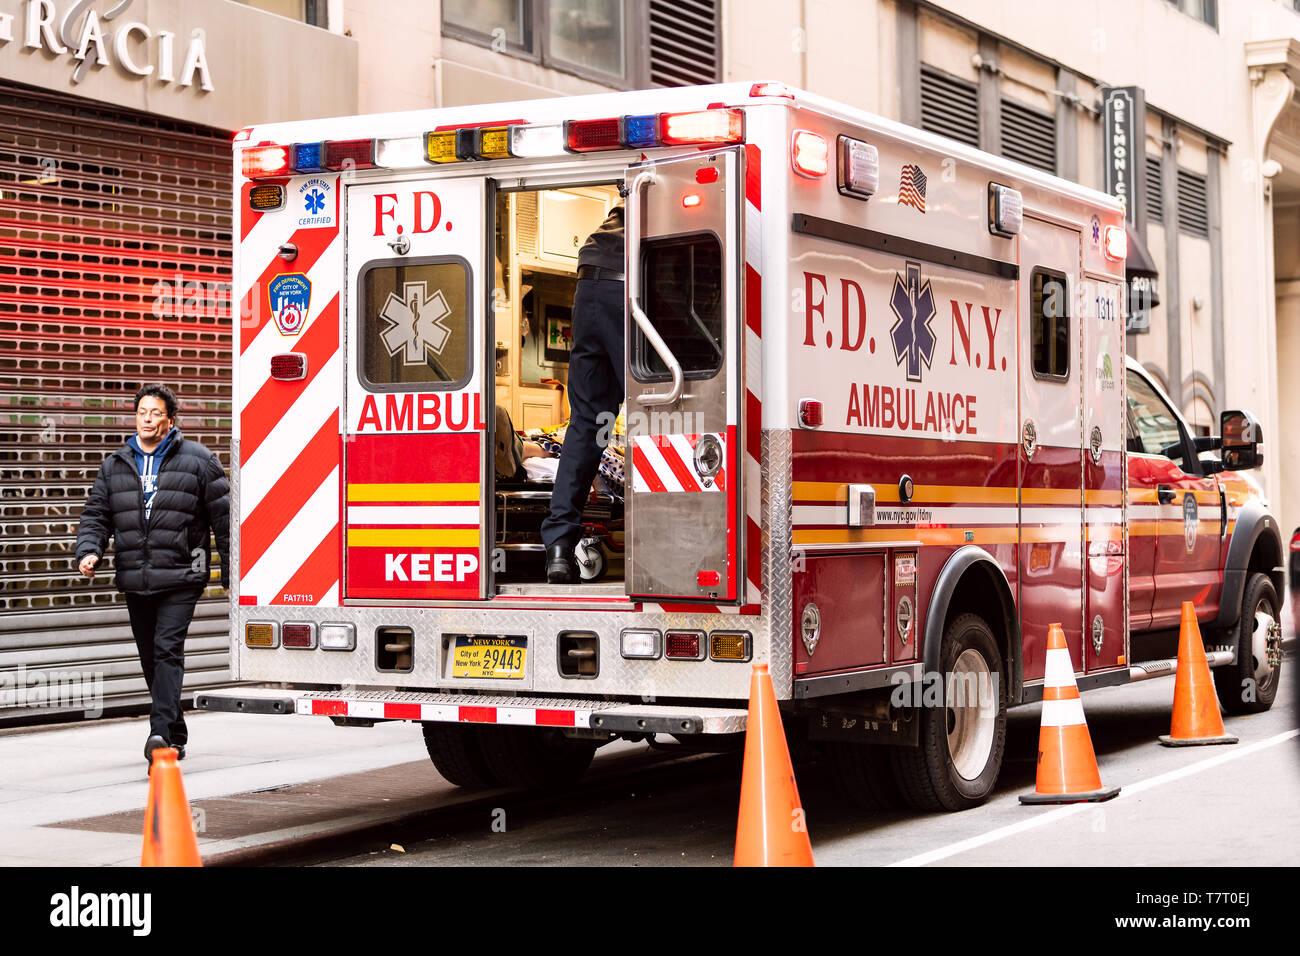 New York - 6 Avril 2018 : NYC midtown avec FDNY ambulance camion rouge ouvert avec une personne sur un brancard stationné sur la rue Banque D'Images